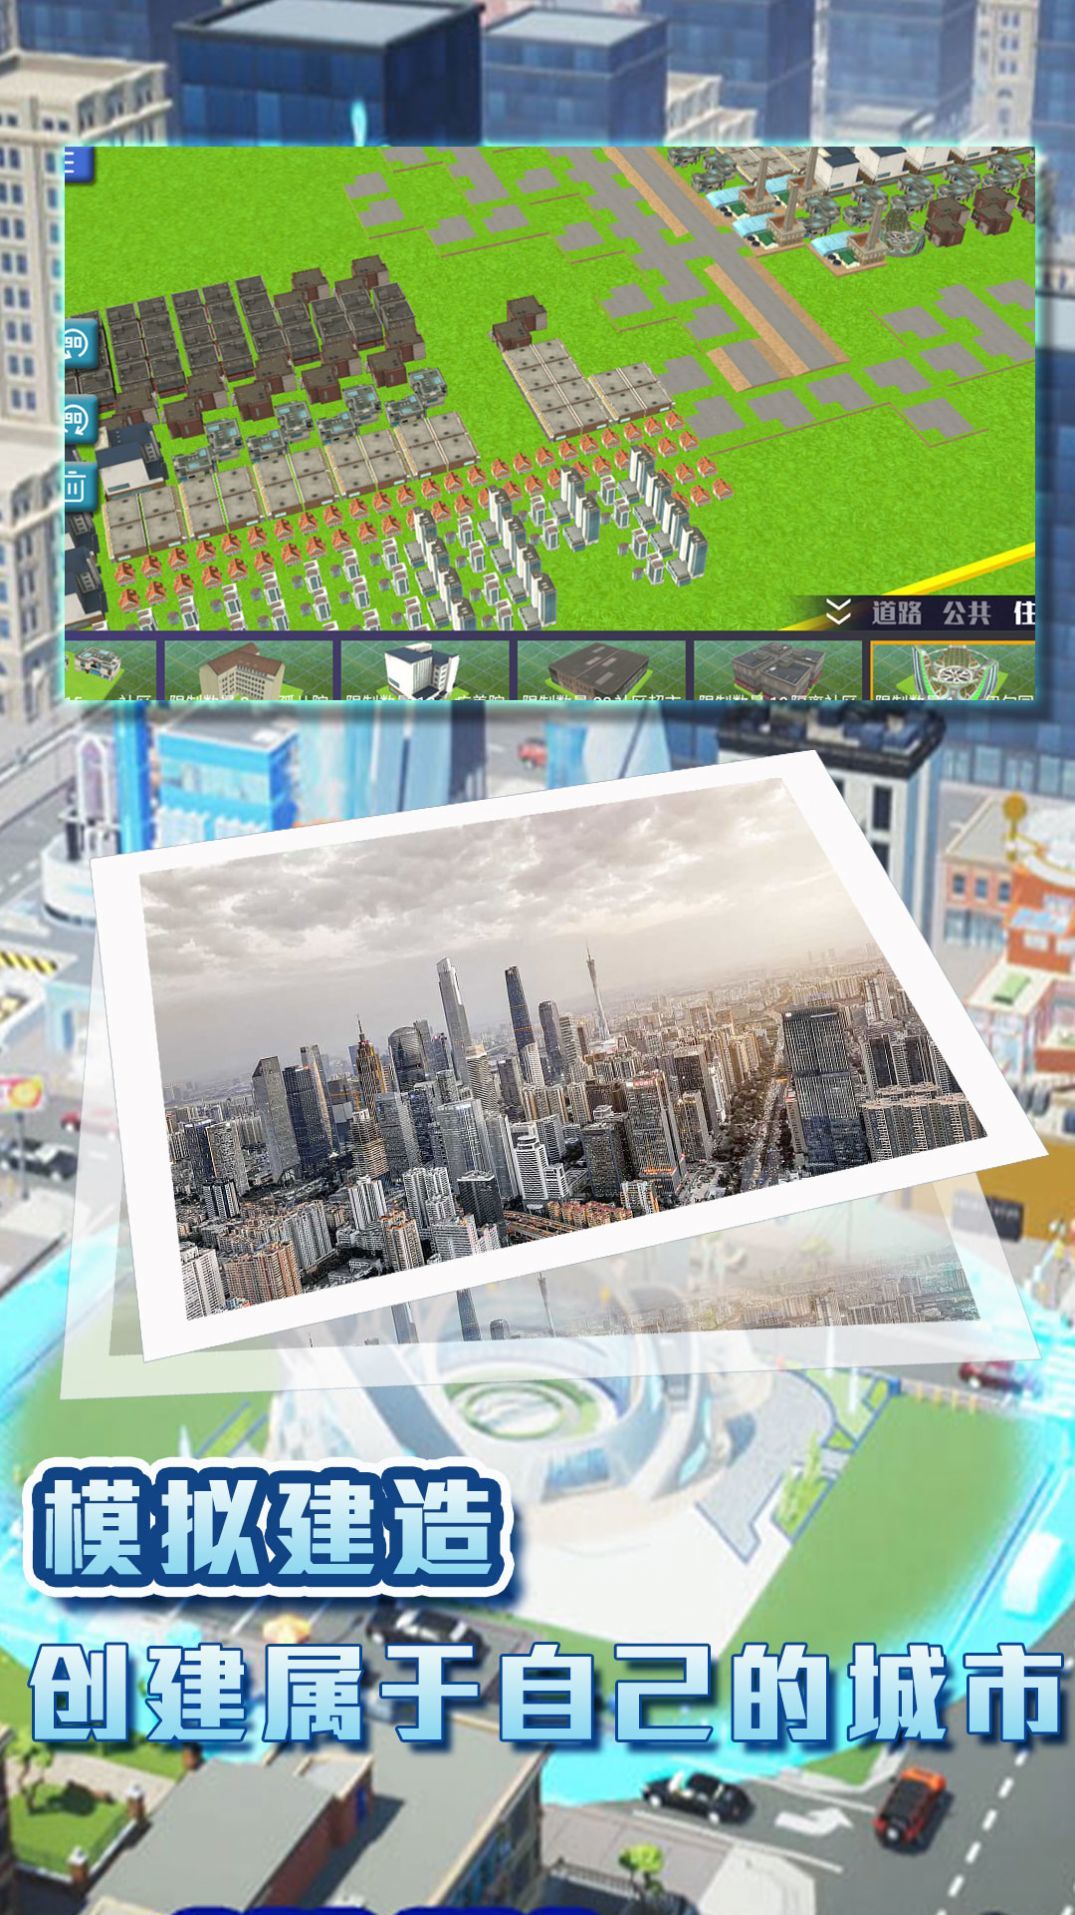 城镇梦想家的挑战游戏最新版